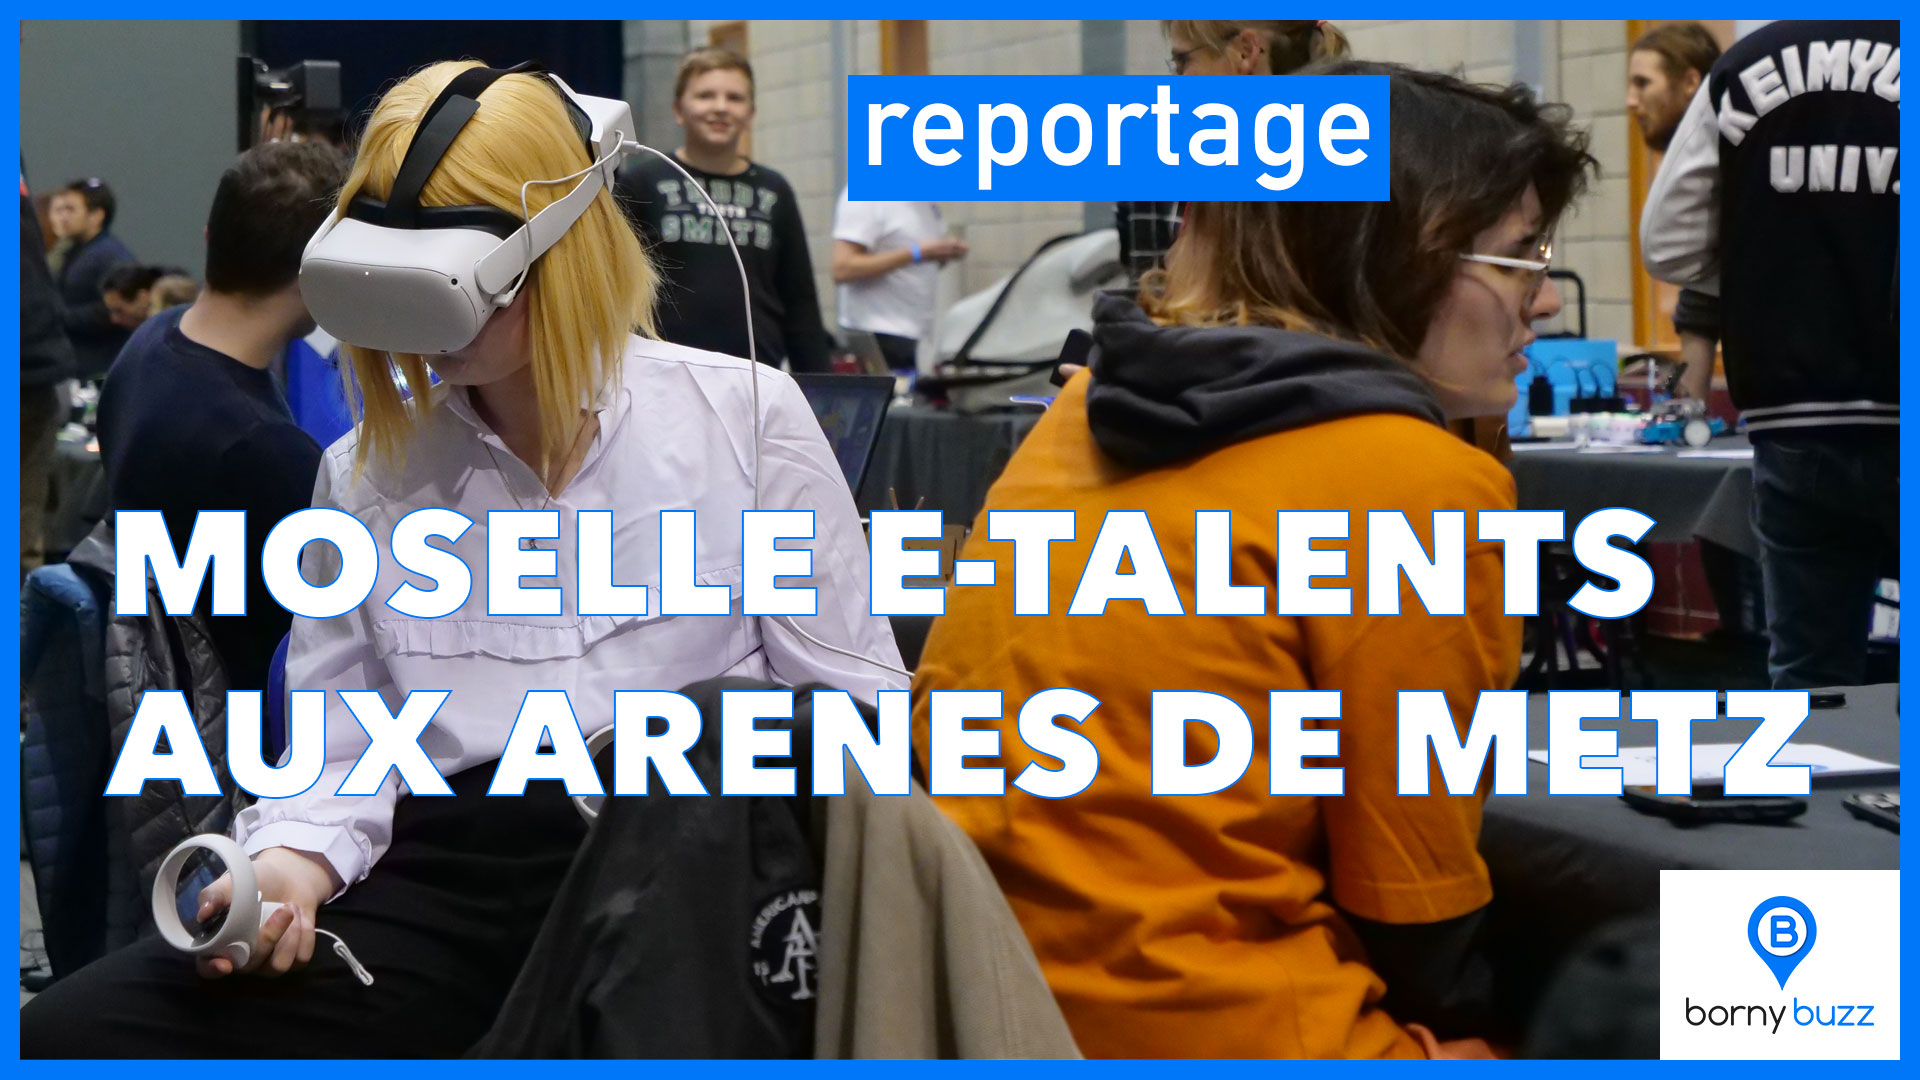 Moselle E-Talents aux Arènes de Metz